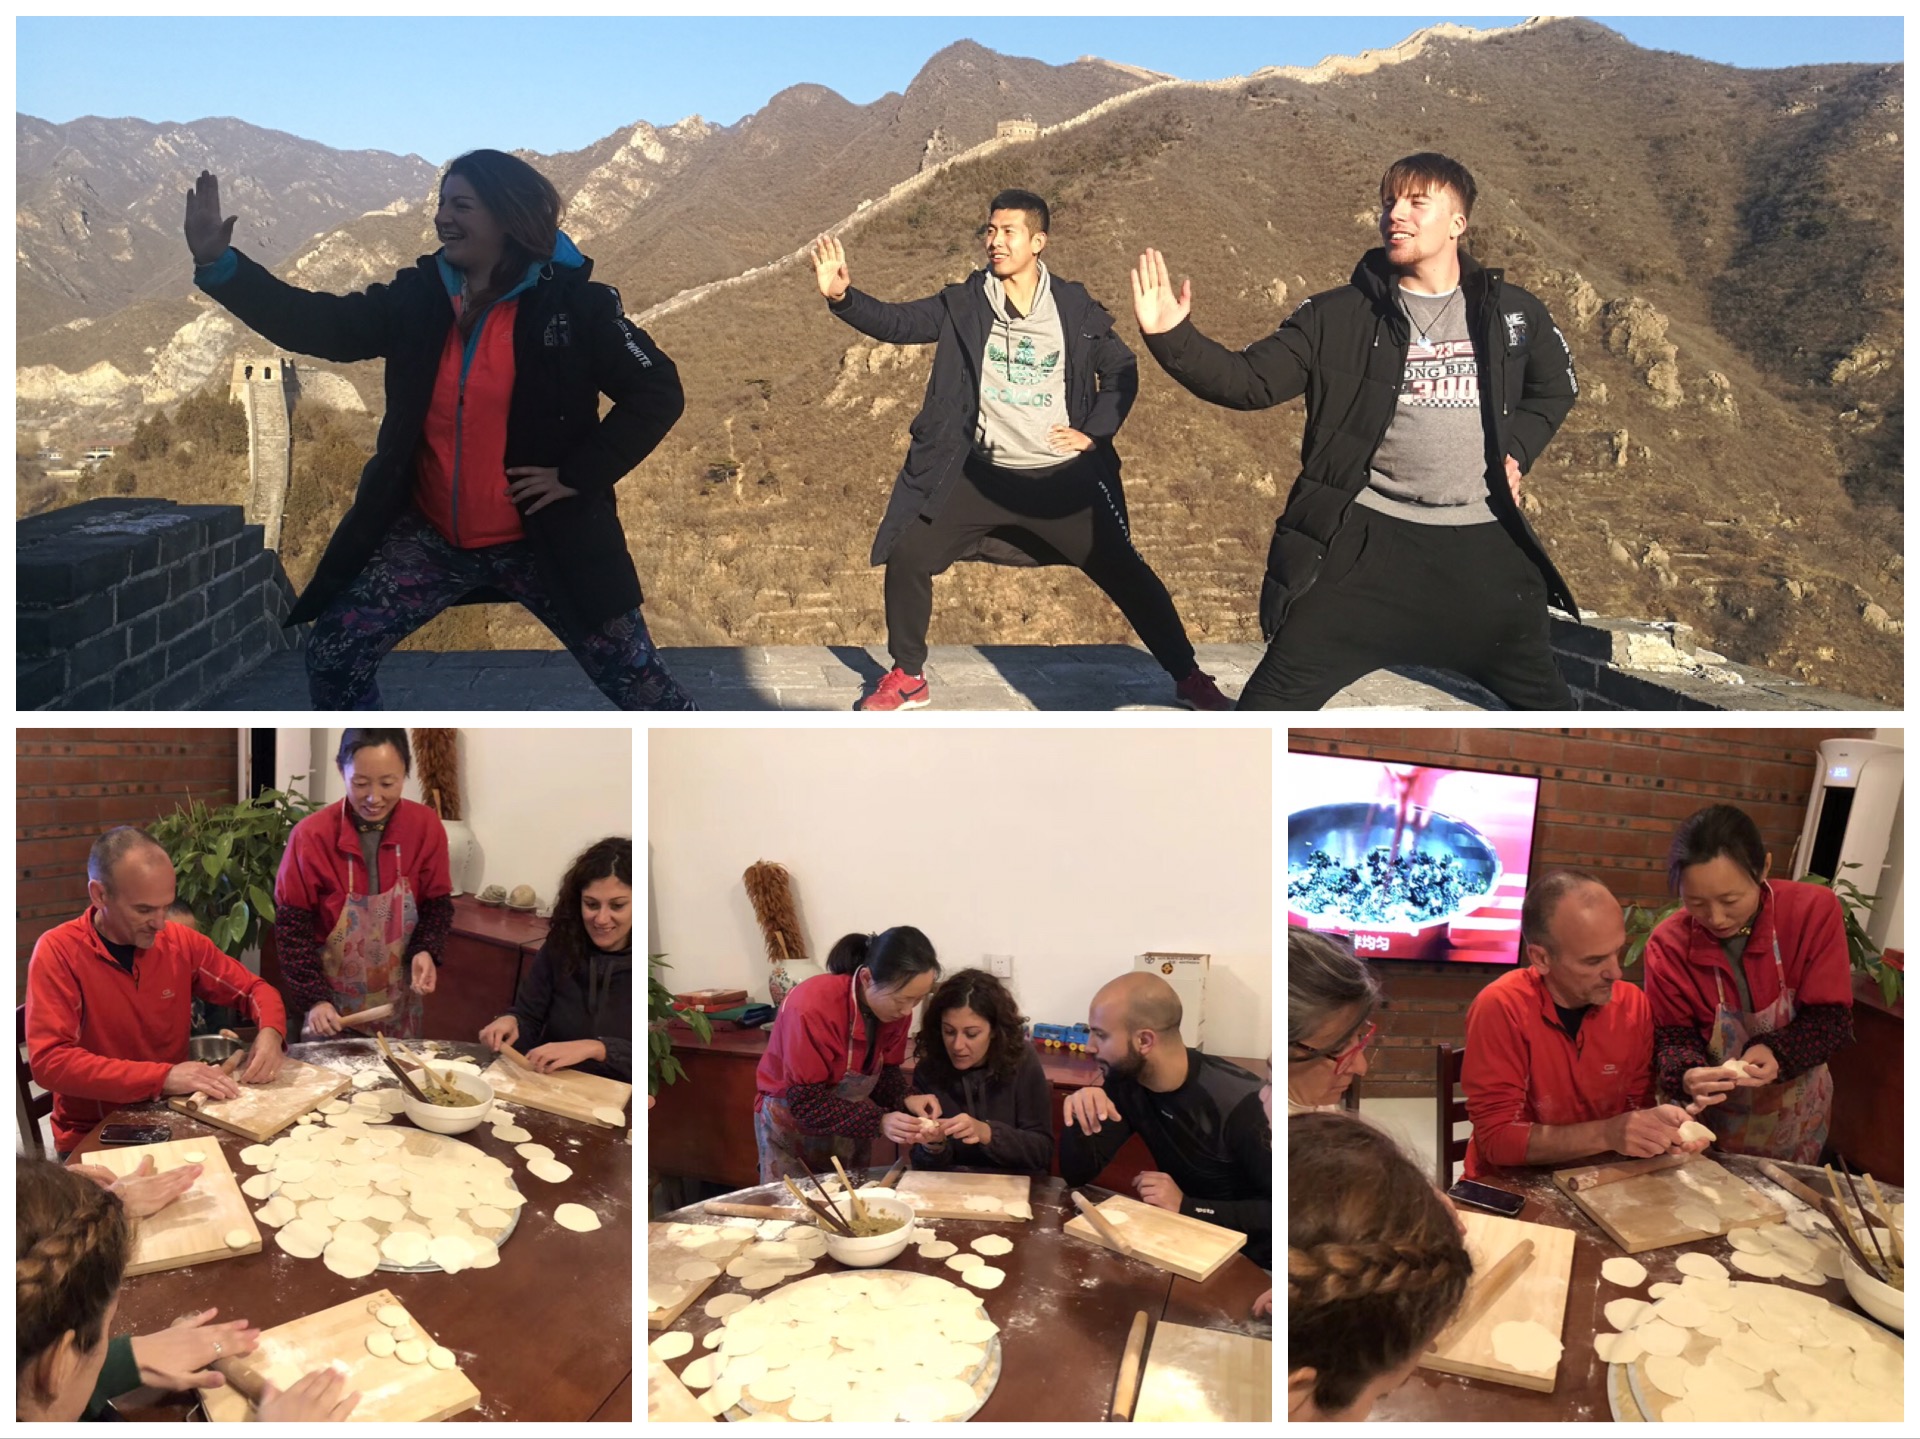 Mutianyu Great Wall and Making Dumplings Layover Tour